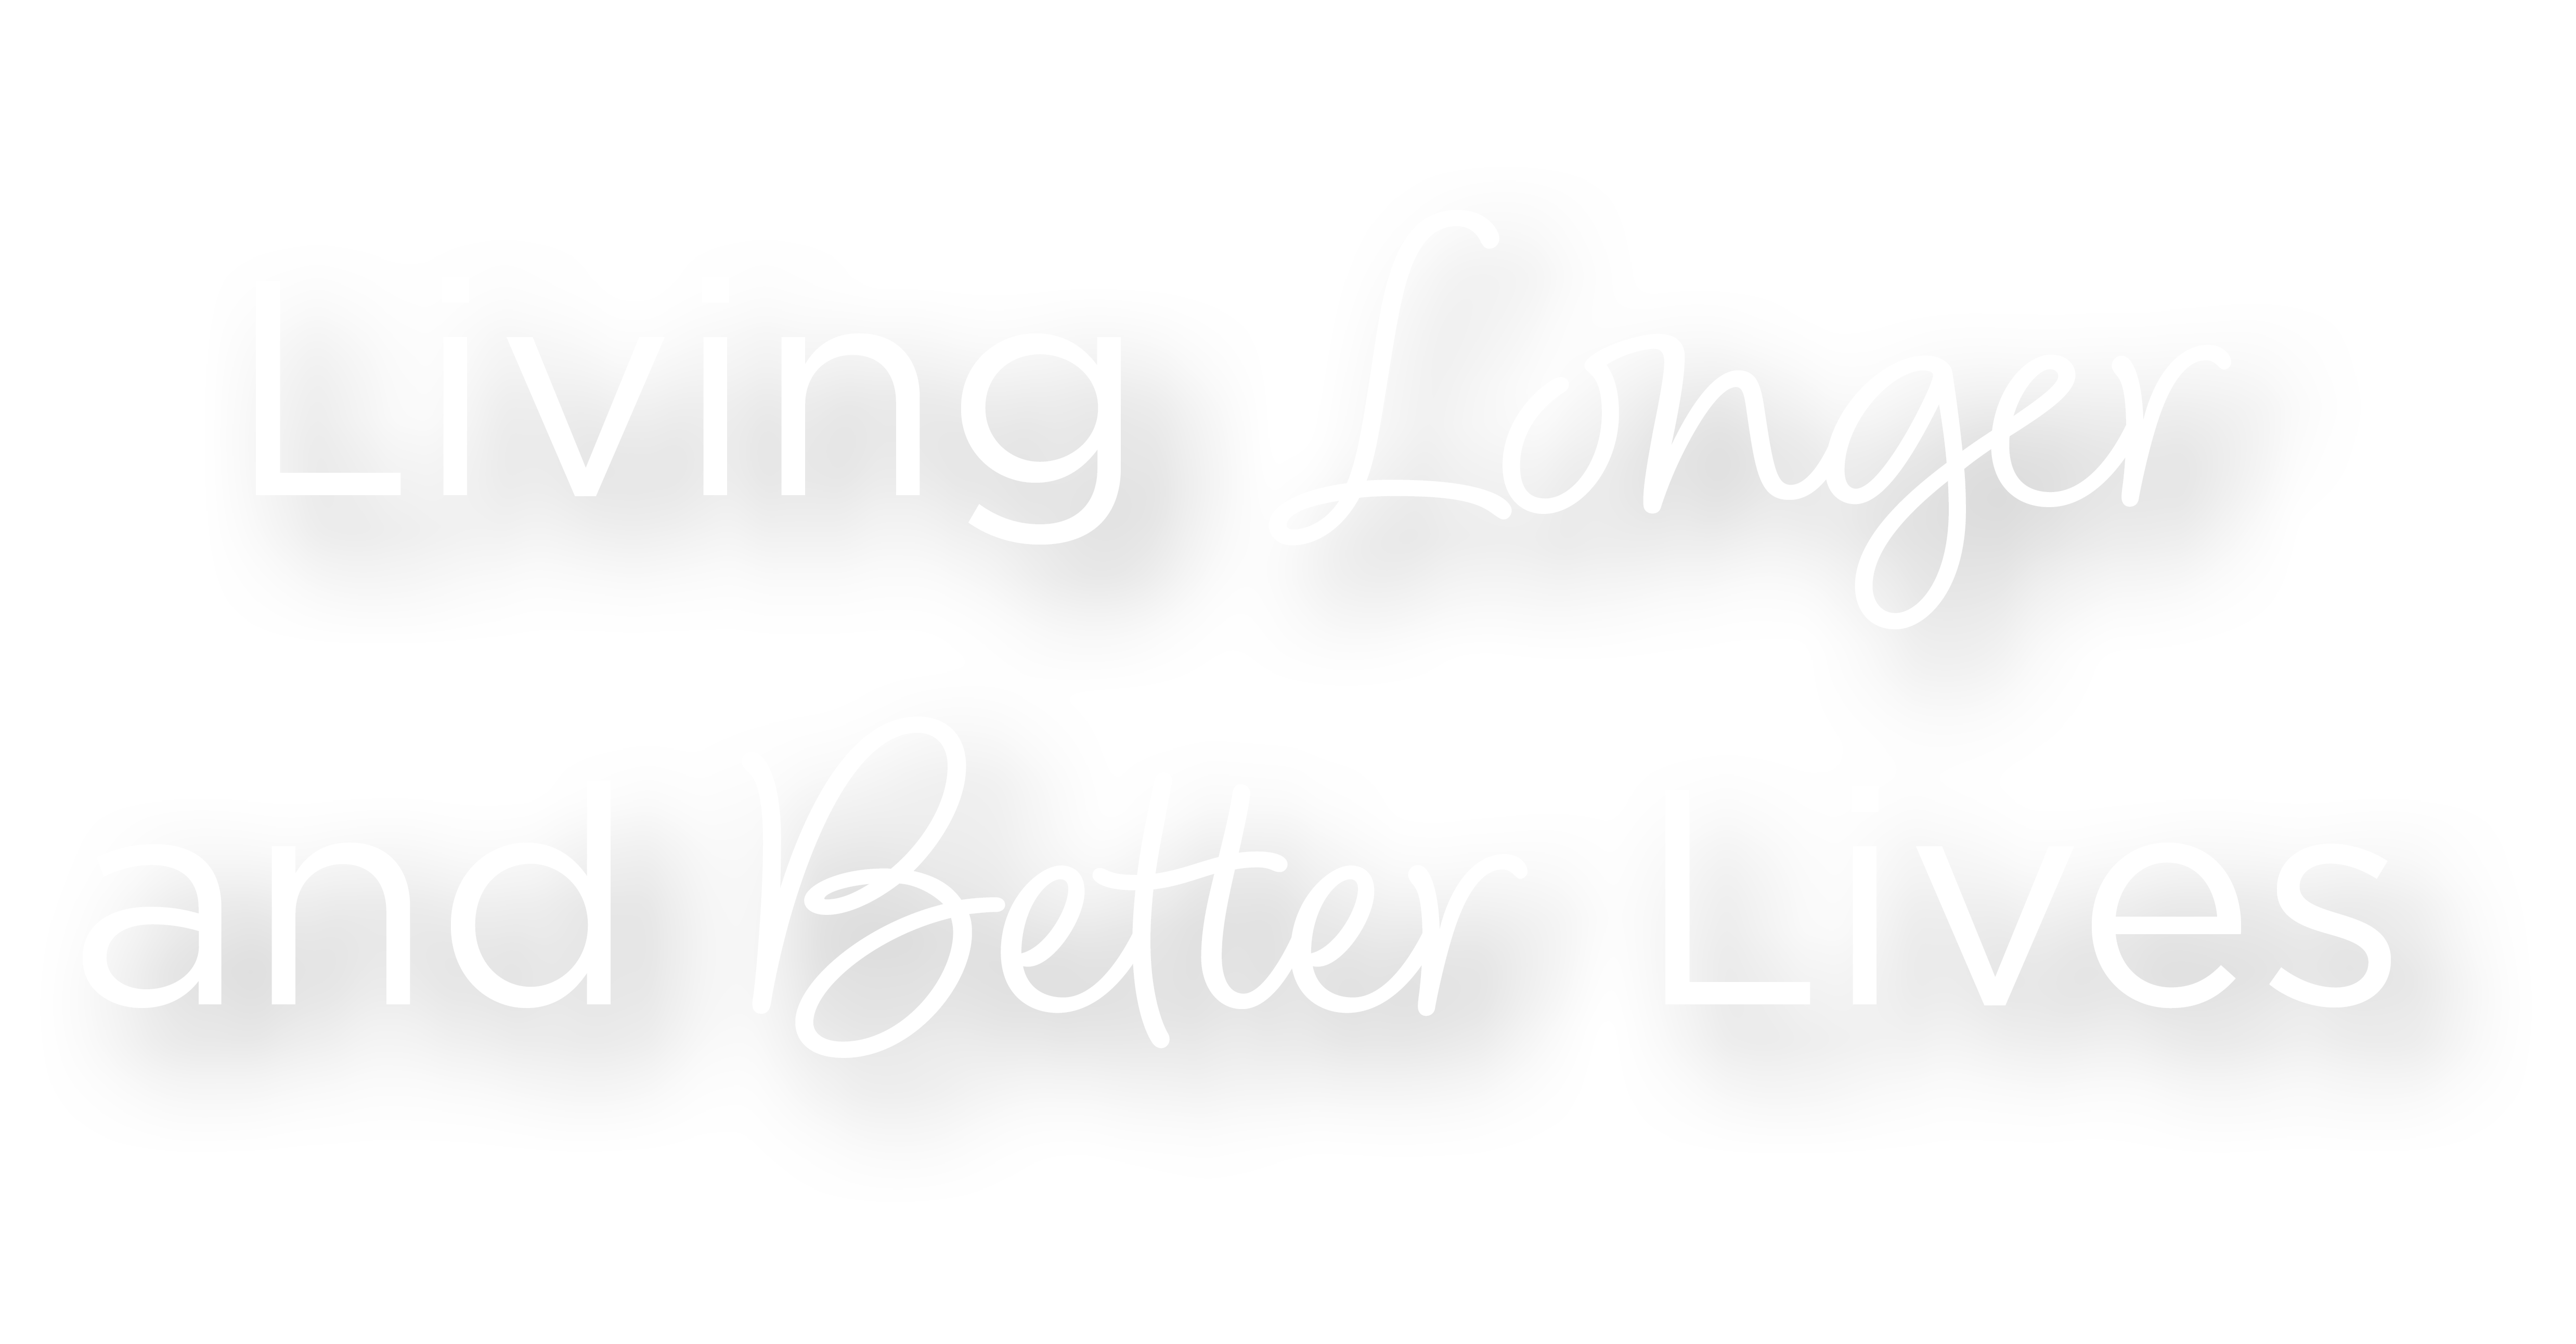 Living Longer and Better Lives